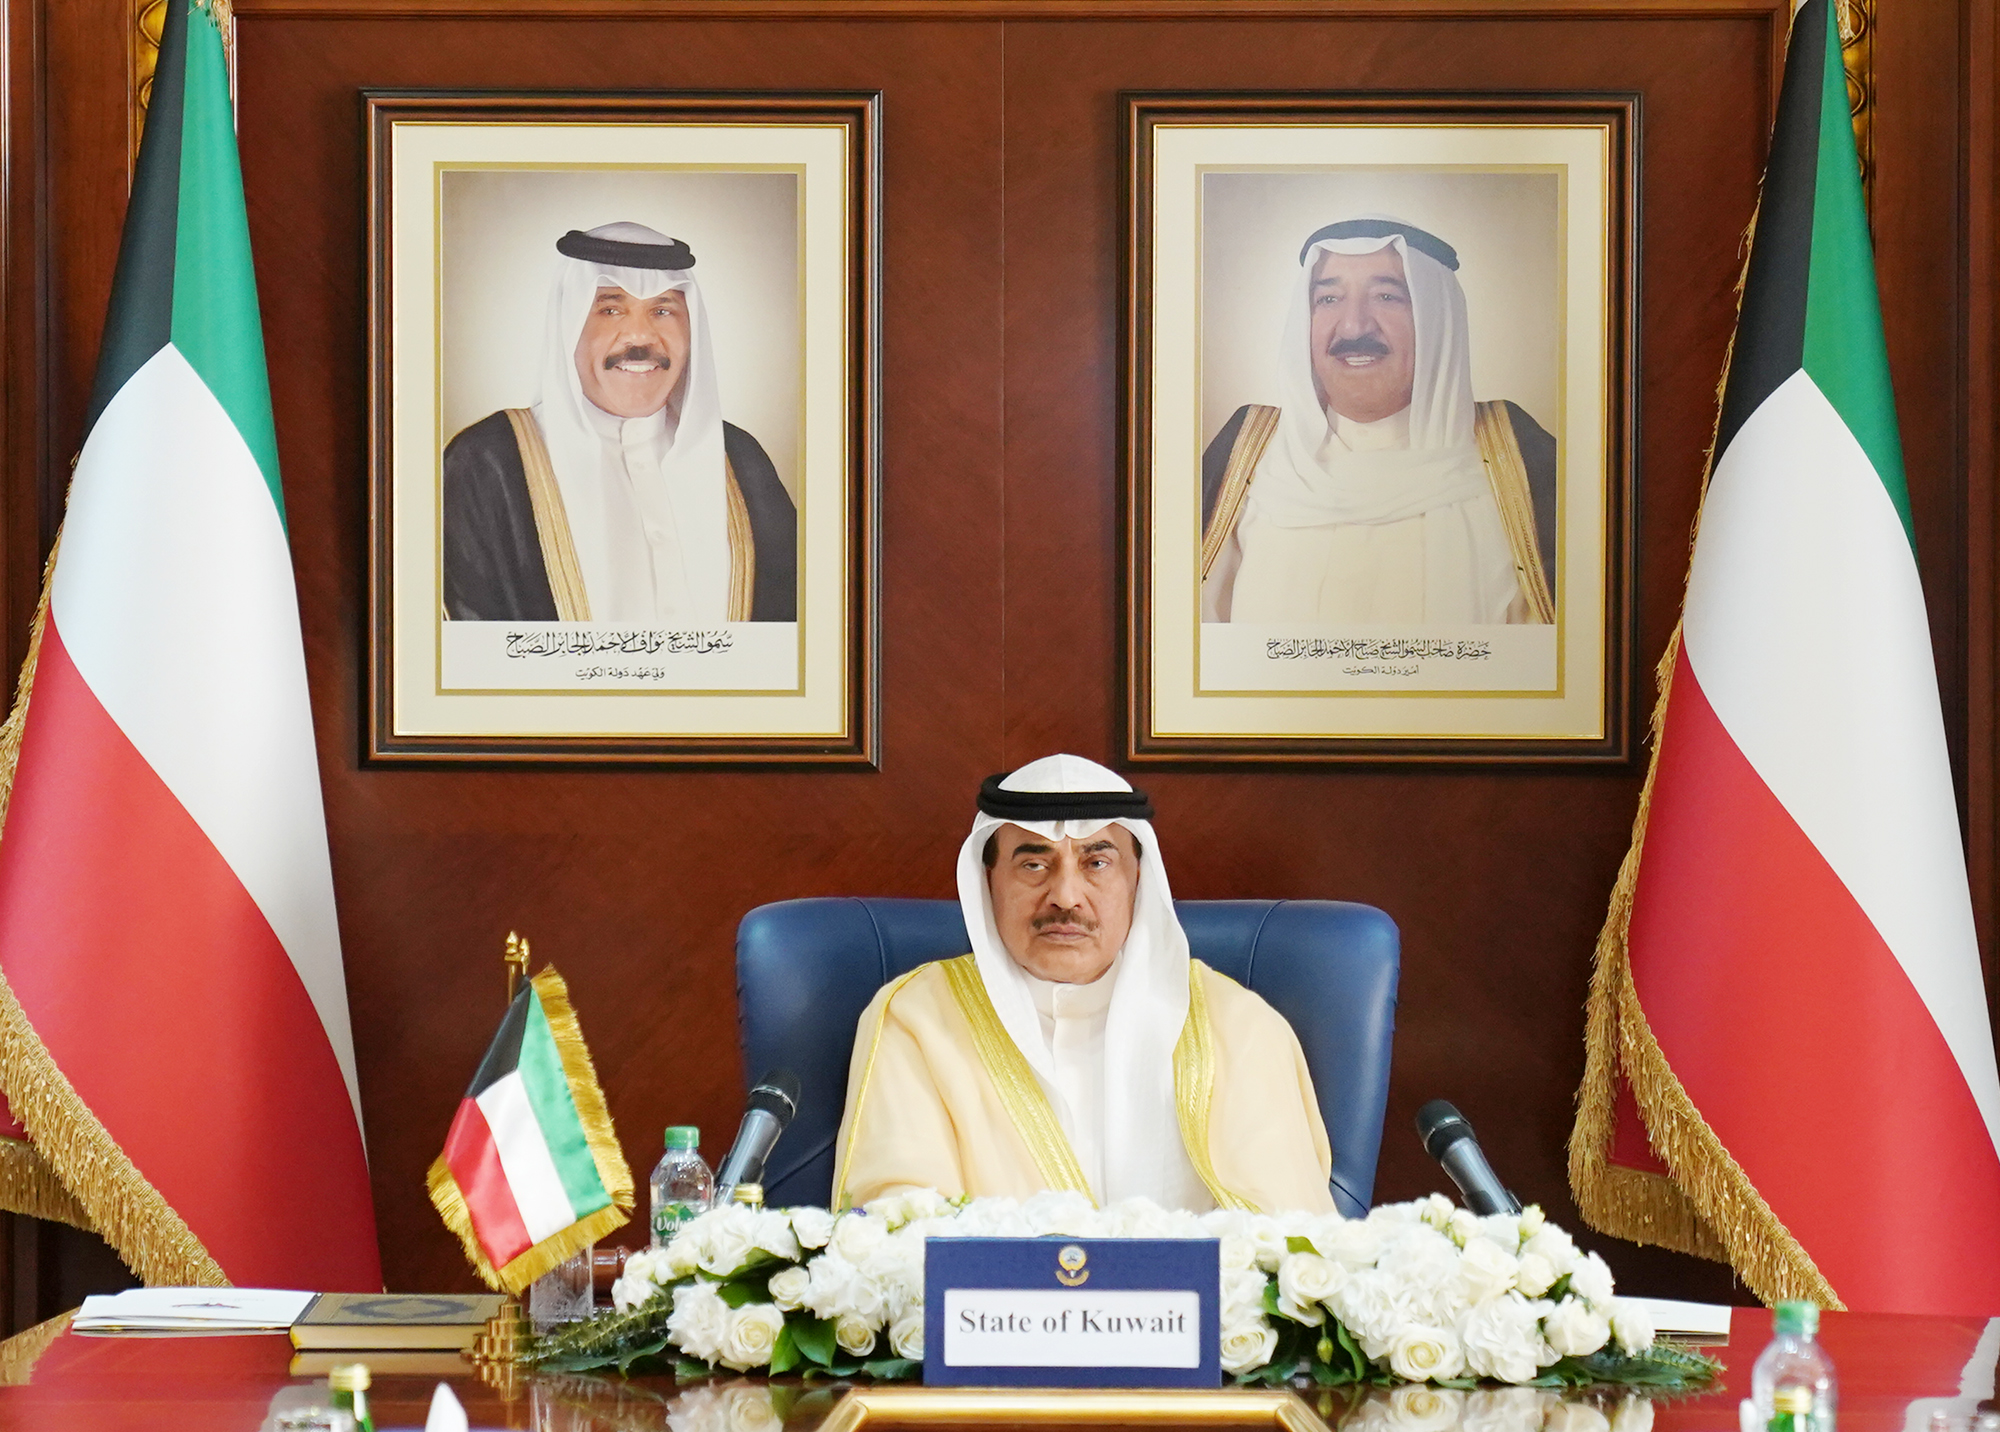 His Highness the Prime Minister Sheikh Sabah Al-Khaled Al-Hamad Al-Sabah